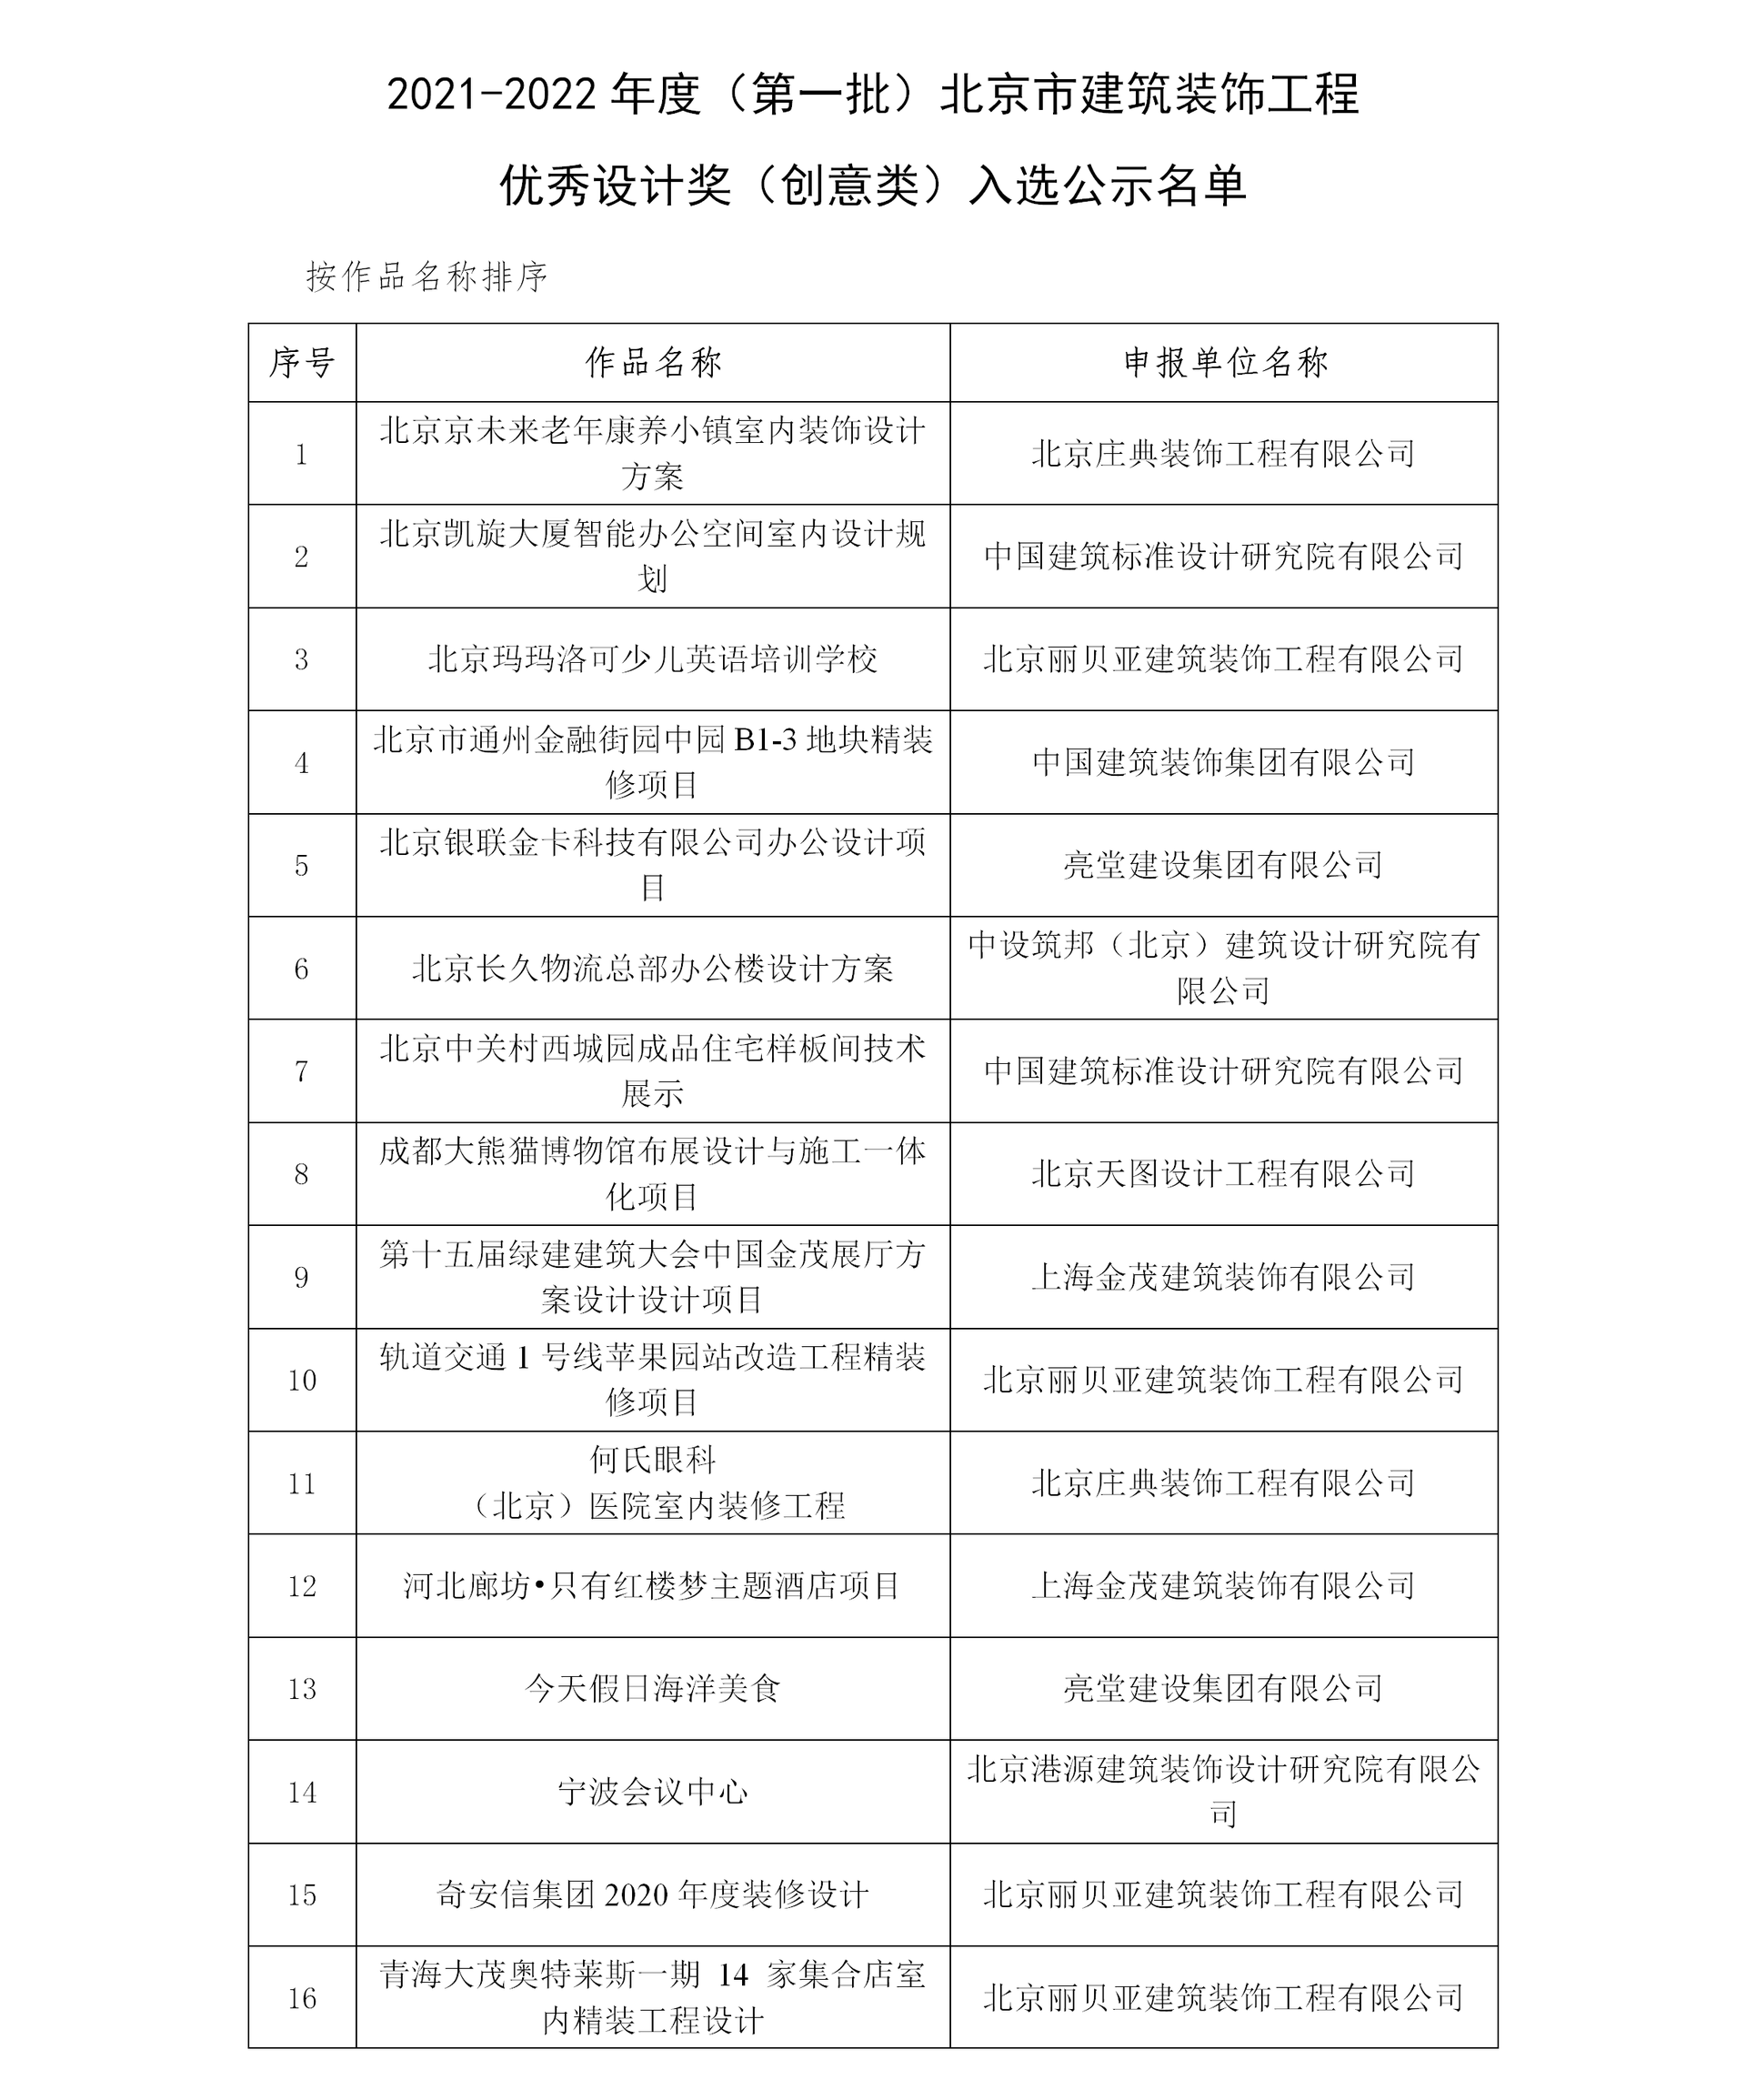 2021年北京市建筑装饰工程优秀设计奖入选名单公示(2)_05_副本.png